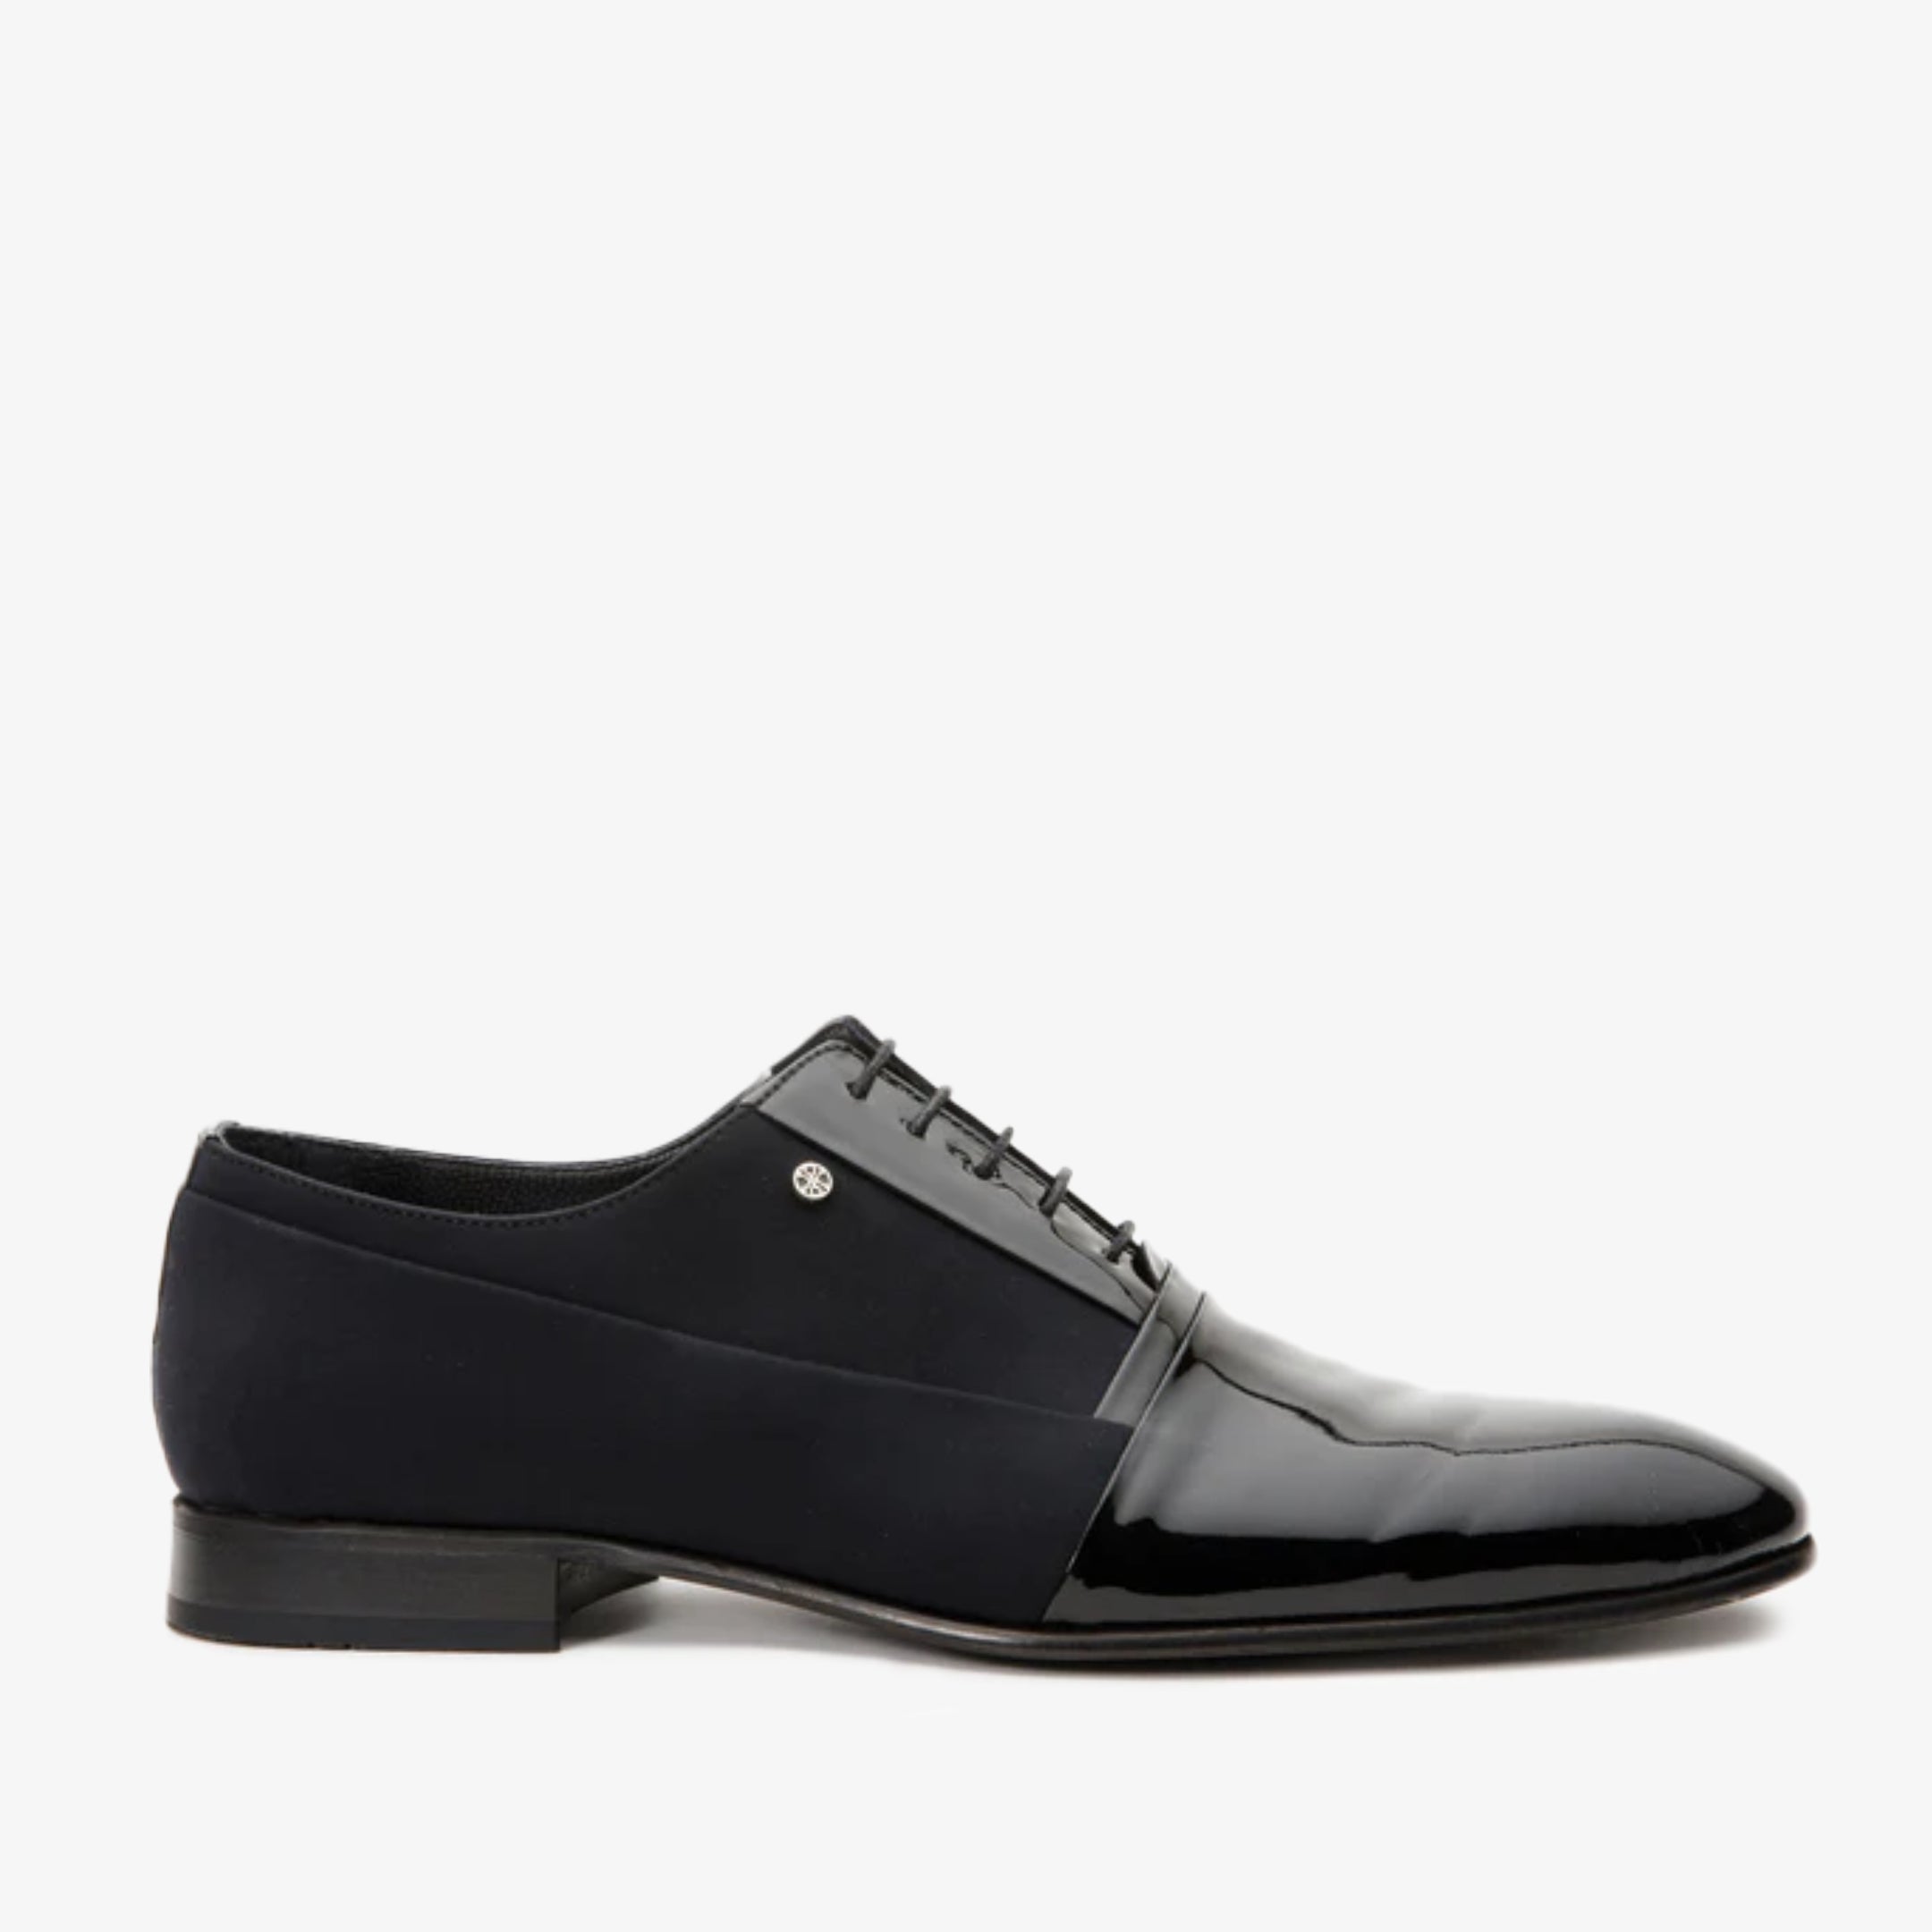 The Colombo Black Cap Toe Oxford Men Shoe